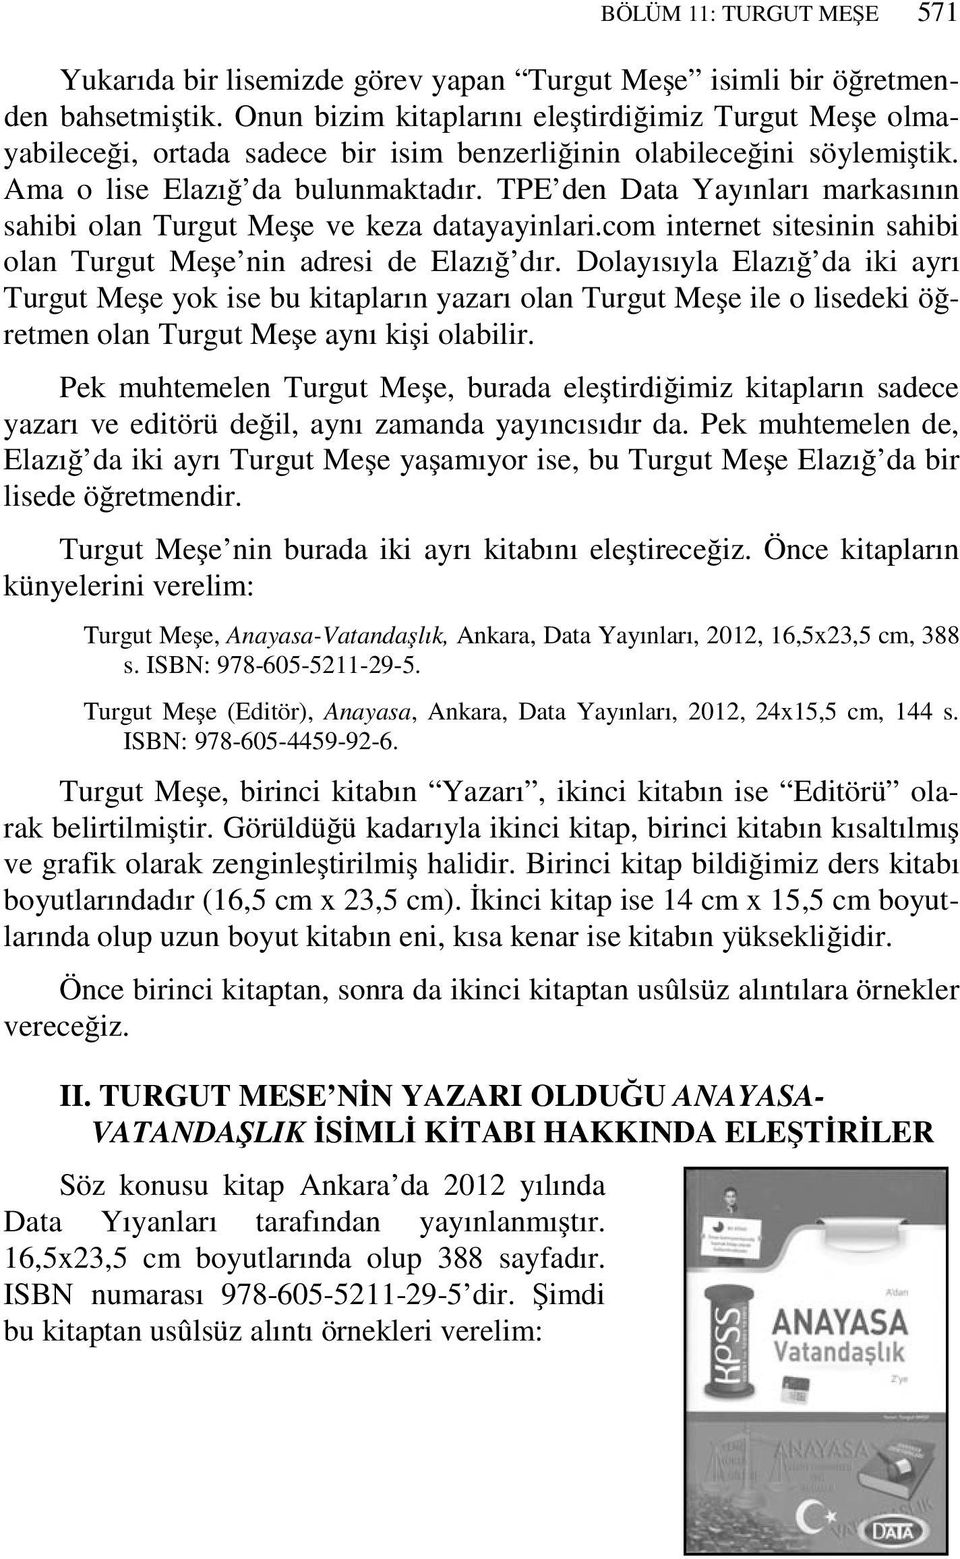 TPE den Data Yayınları markasının sahibi olan Turgut Meşe ve keza datayayinlari.com internet sitesinin sahibi olan Turgut Meşe nin adresi de Elazığ dır.